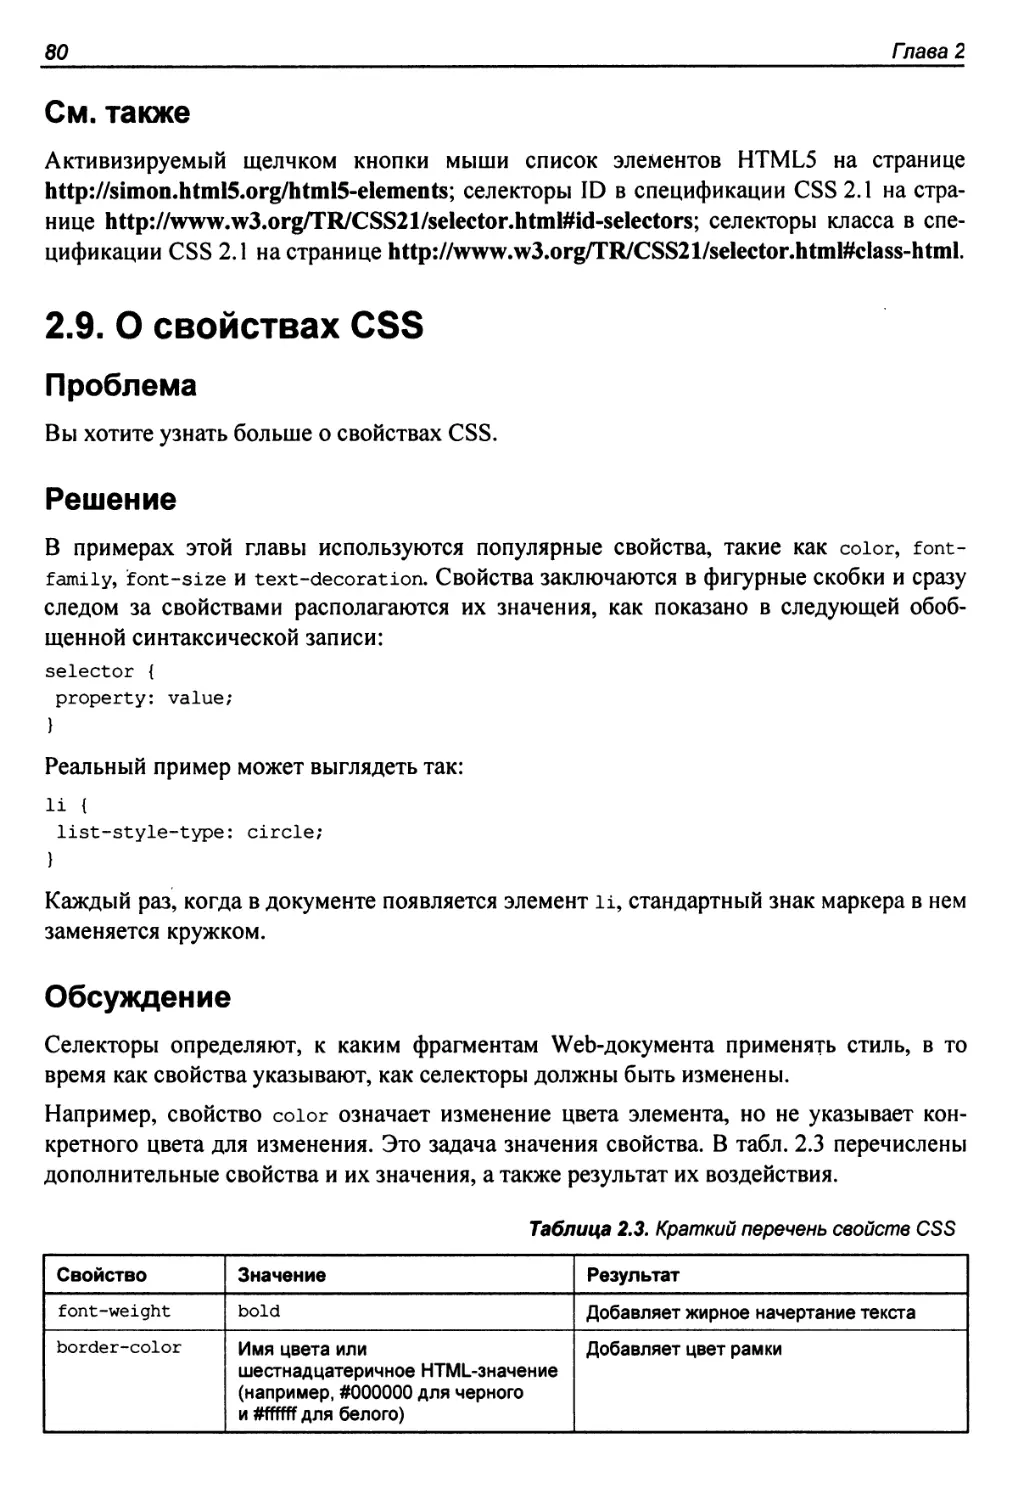 2.9. О свойствах CSS